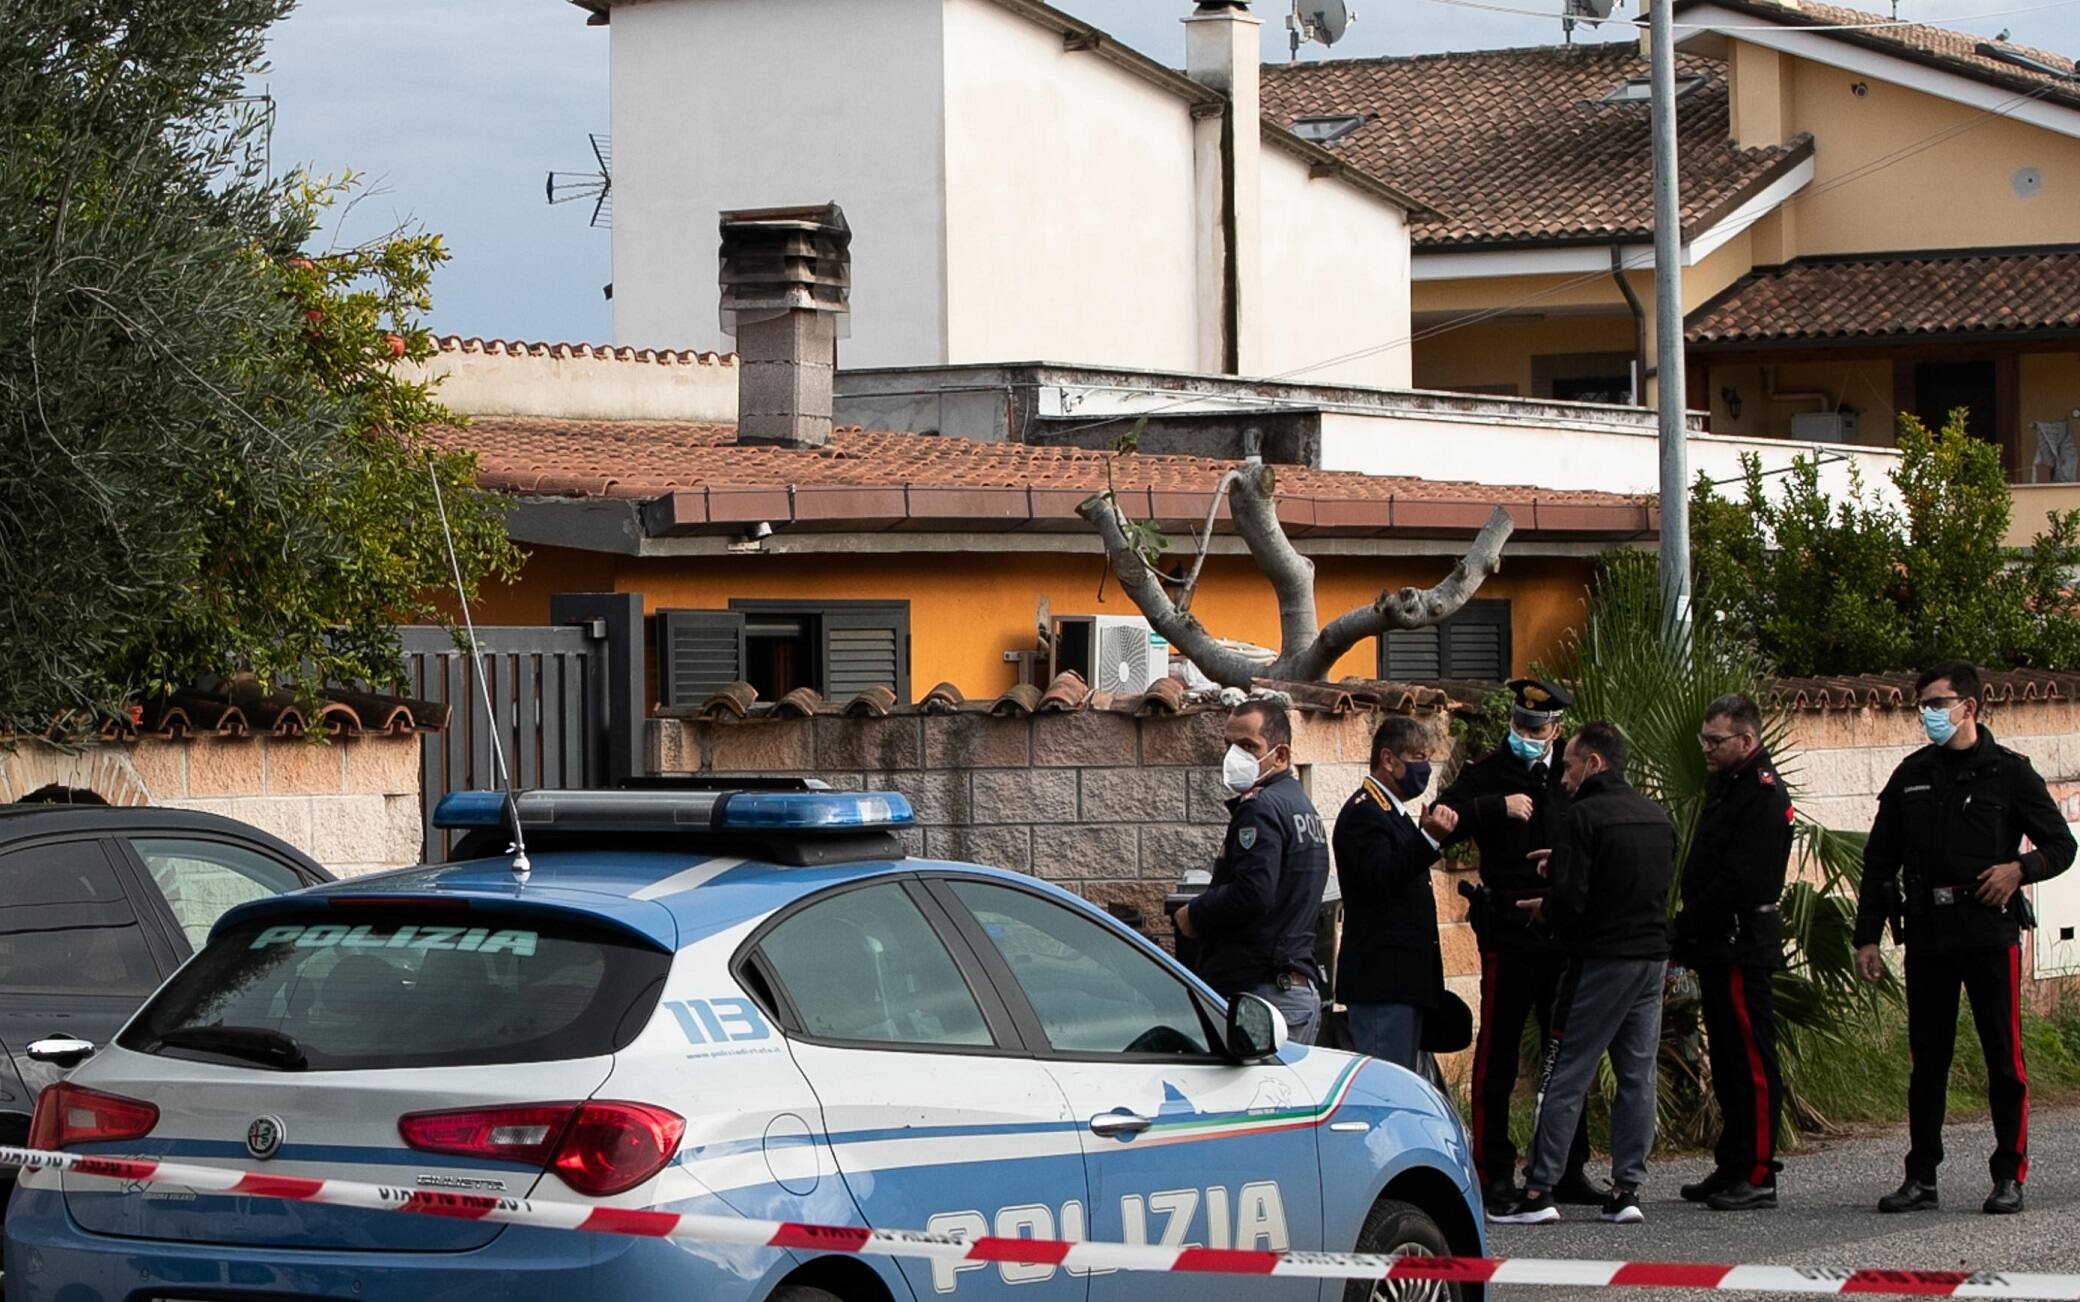 Rilievi delle forze dell'ordine nei pressi dell'abitazione in cui una donna è stata uccisa con un colpo di fucile, a Ostia, Roma, 4 novembre 2021. ANSA/EMANUELE VALERI